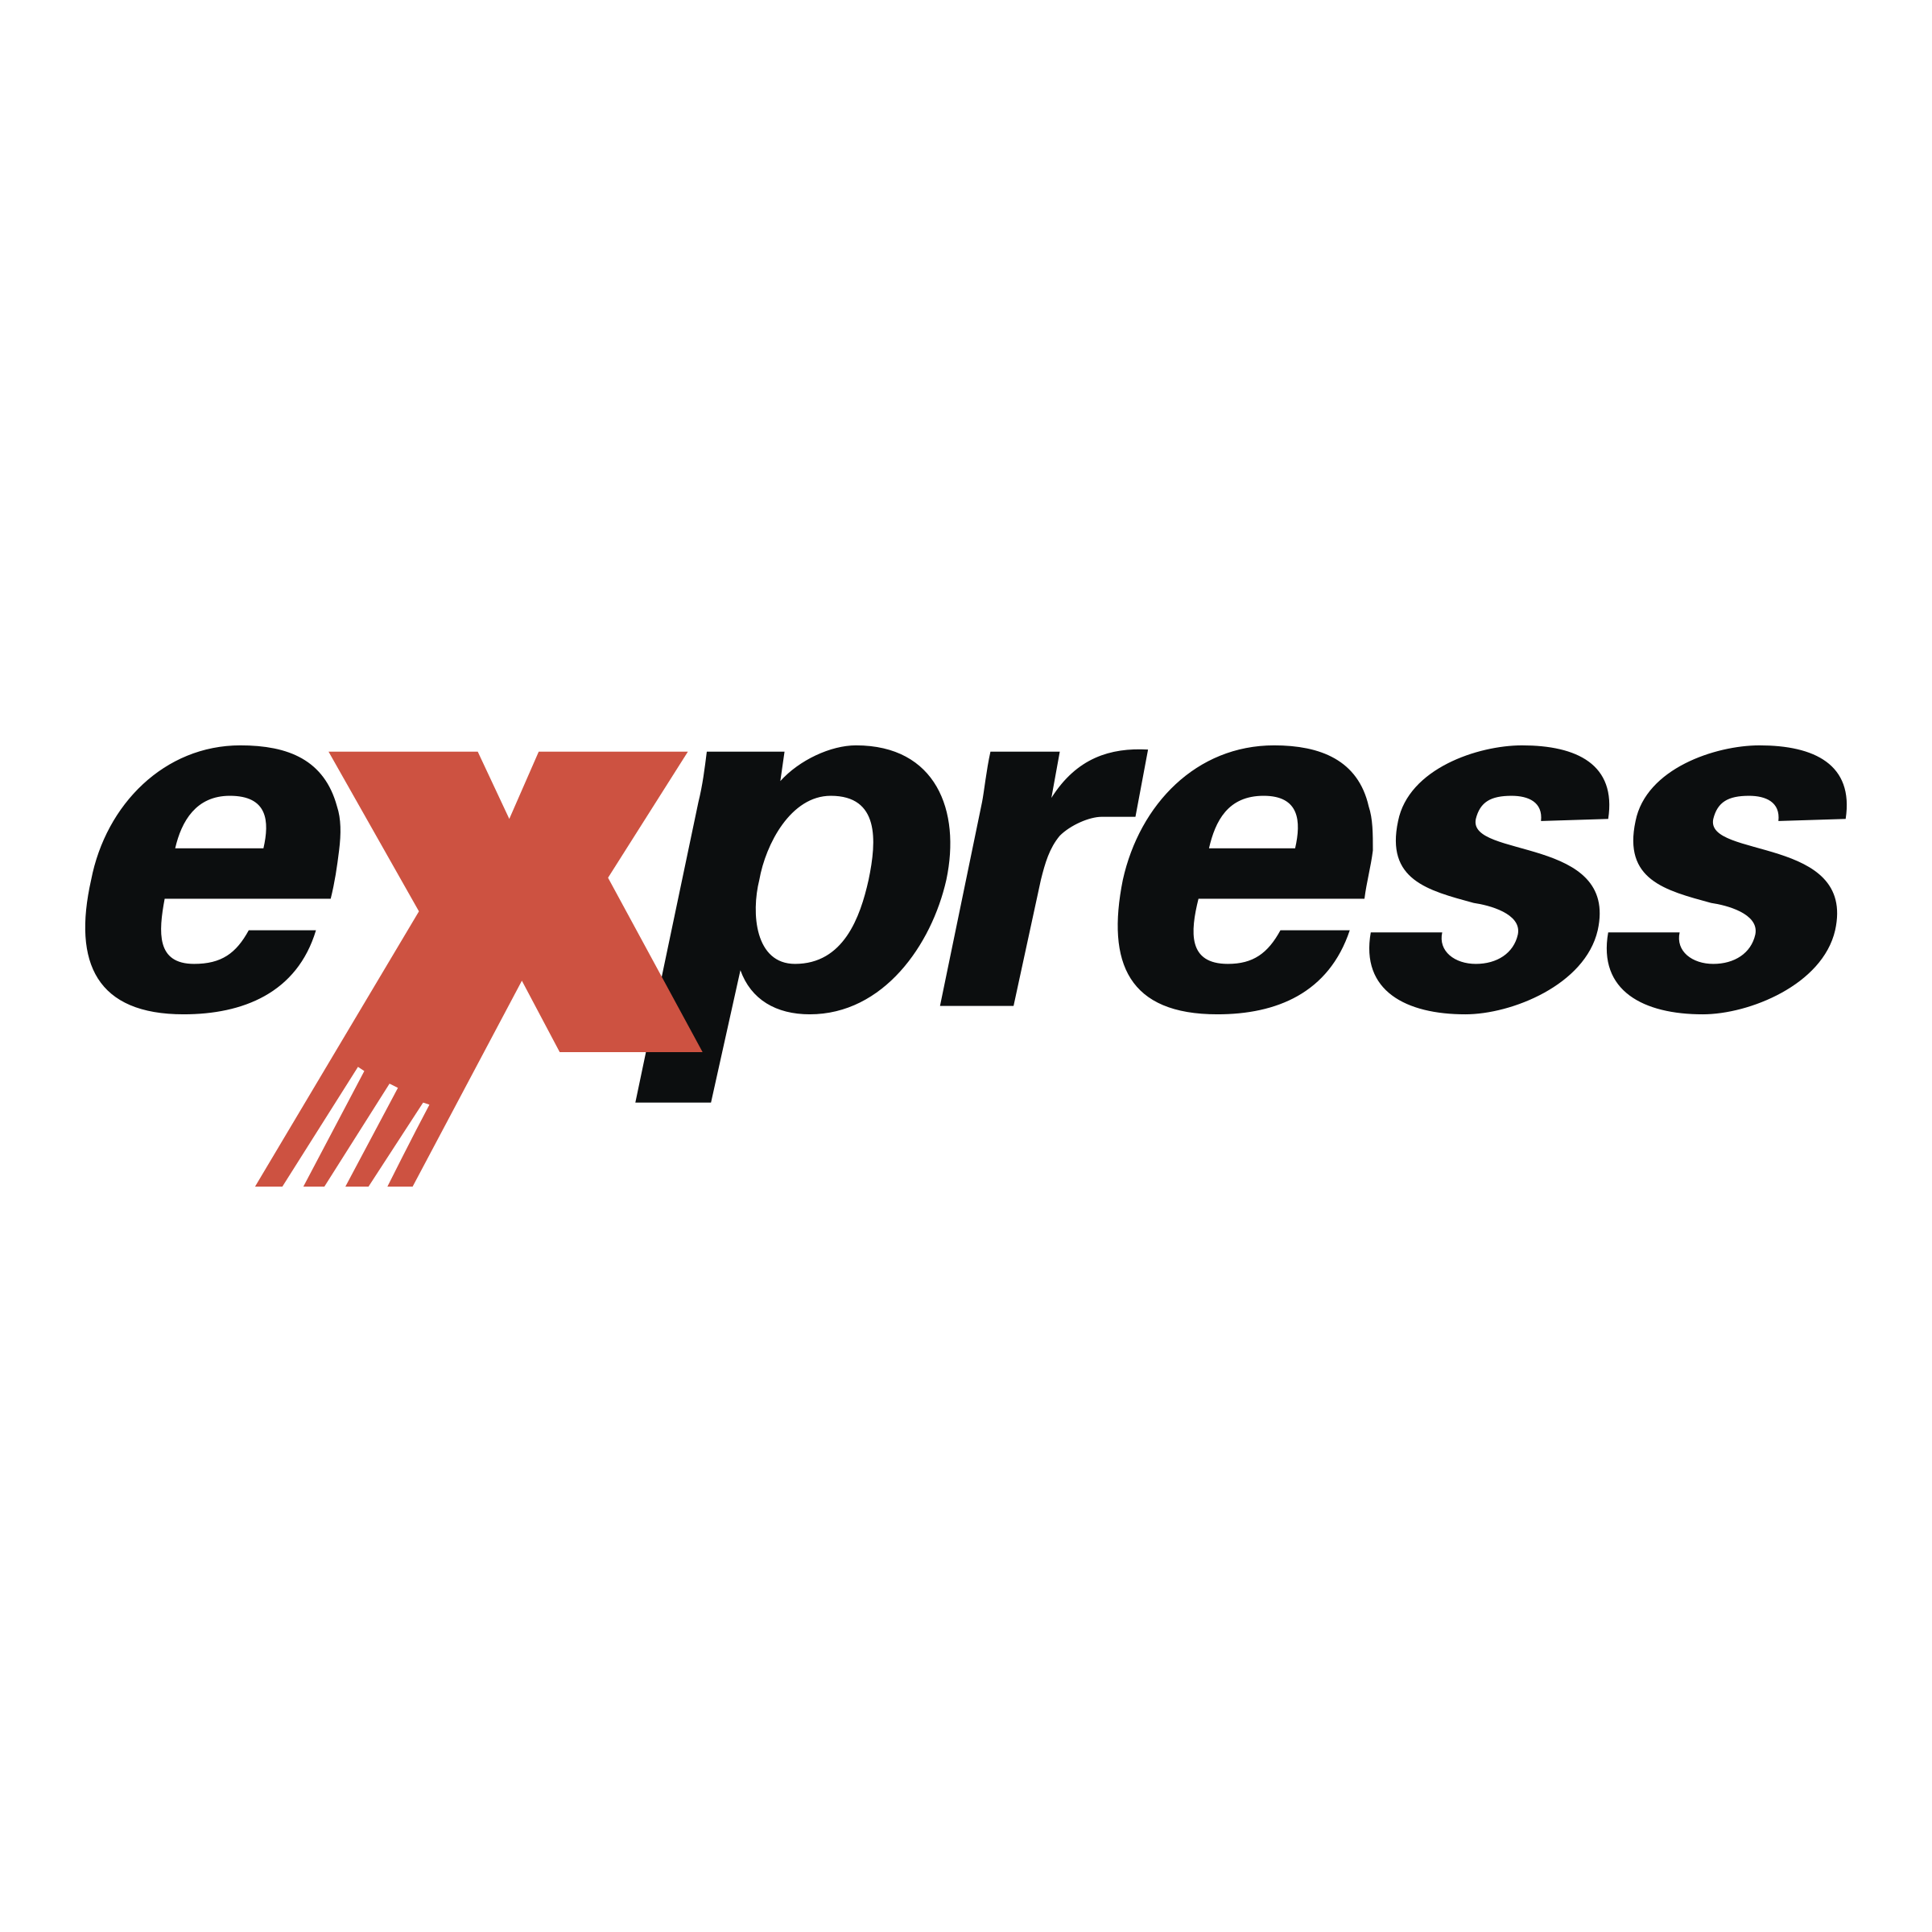 Экспресс логотип. Express надпись. Xpress логотип. Слово экспресс на прозрачном фоне. Экспресс мессенджер ржд